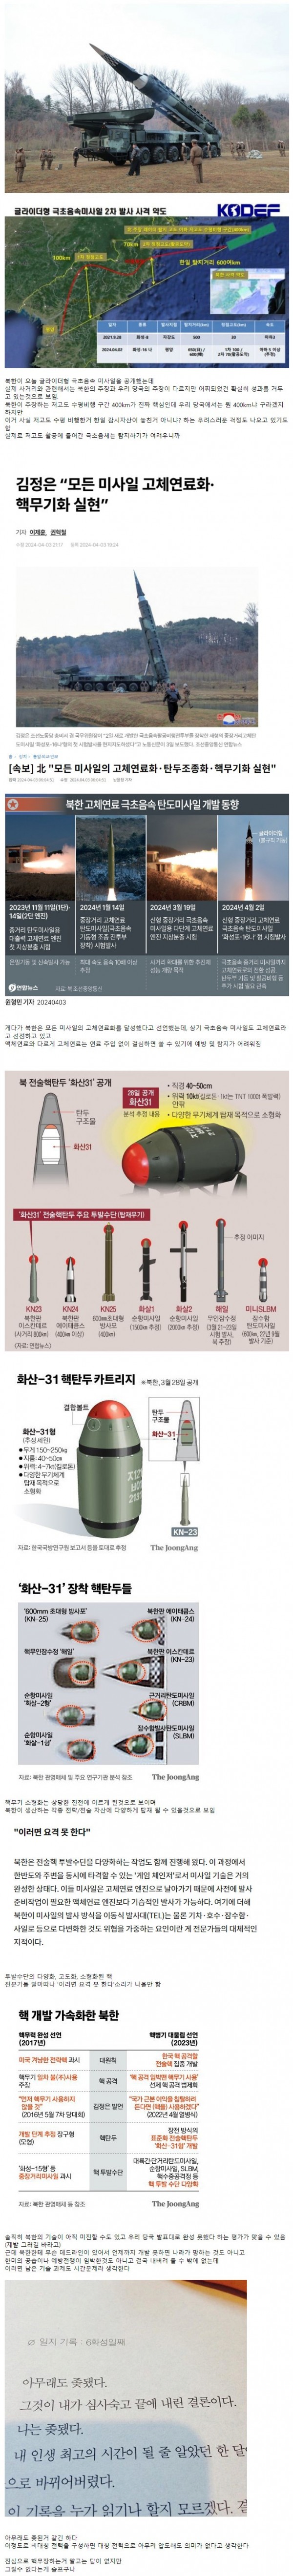 매우 우려스러운 요즘 북한 핵미사일 기술 동향